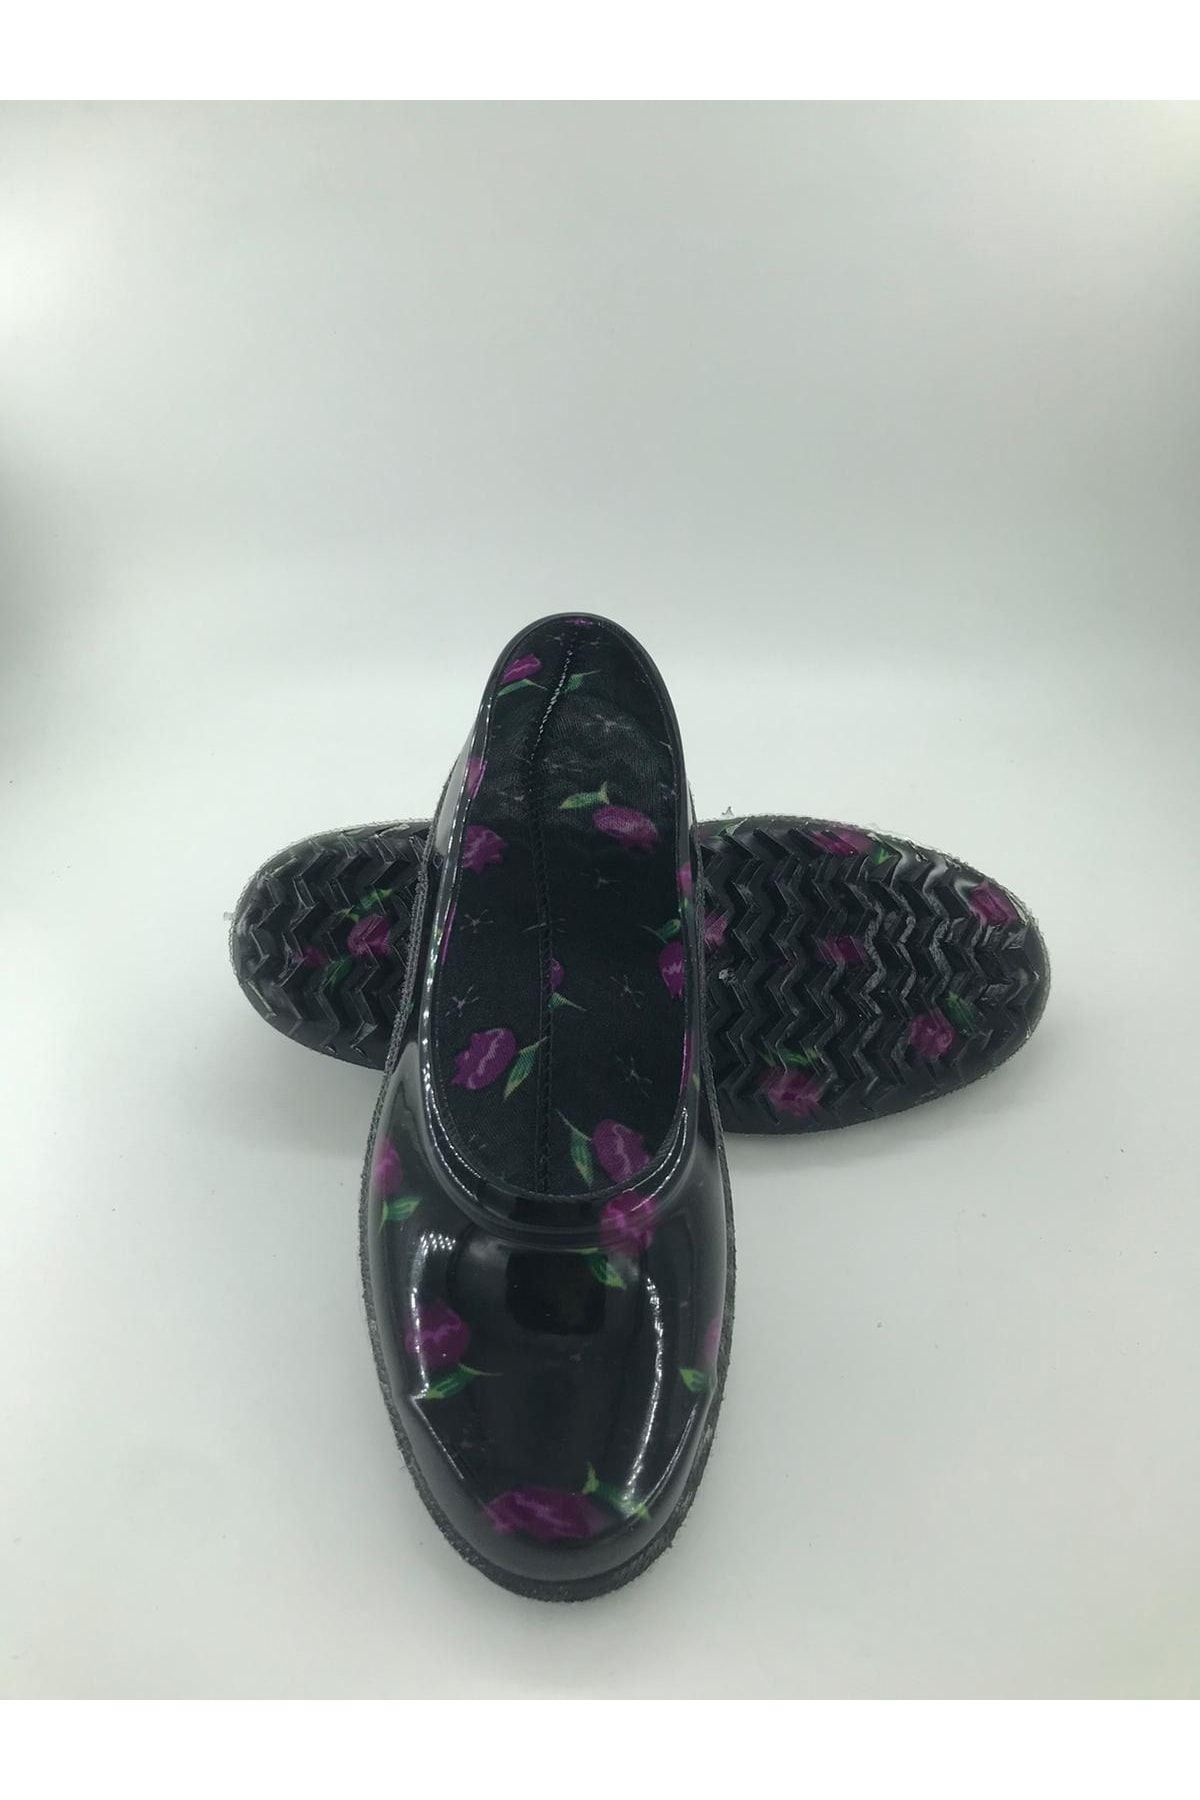 CKR Desenli Lastik Ayakkabı Kara Lastik Ayakkabı